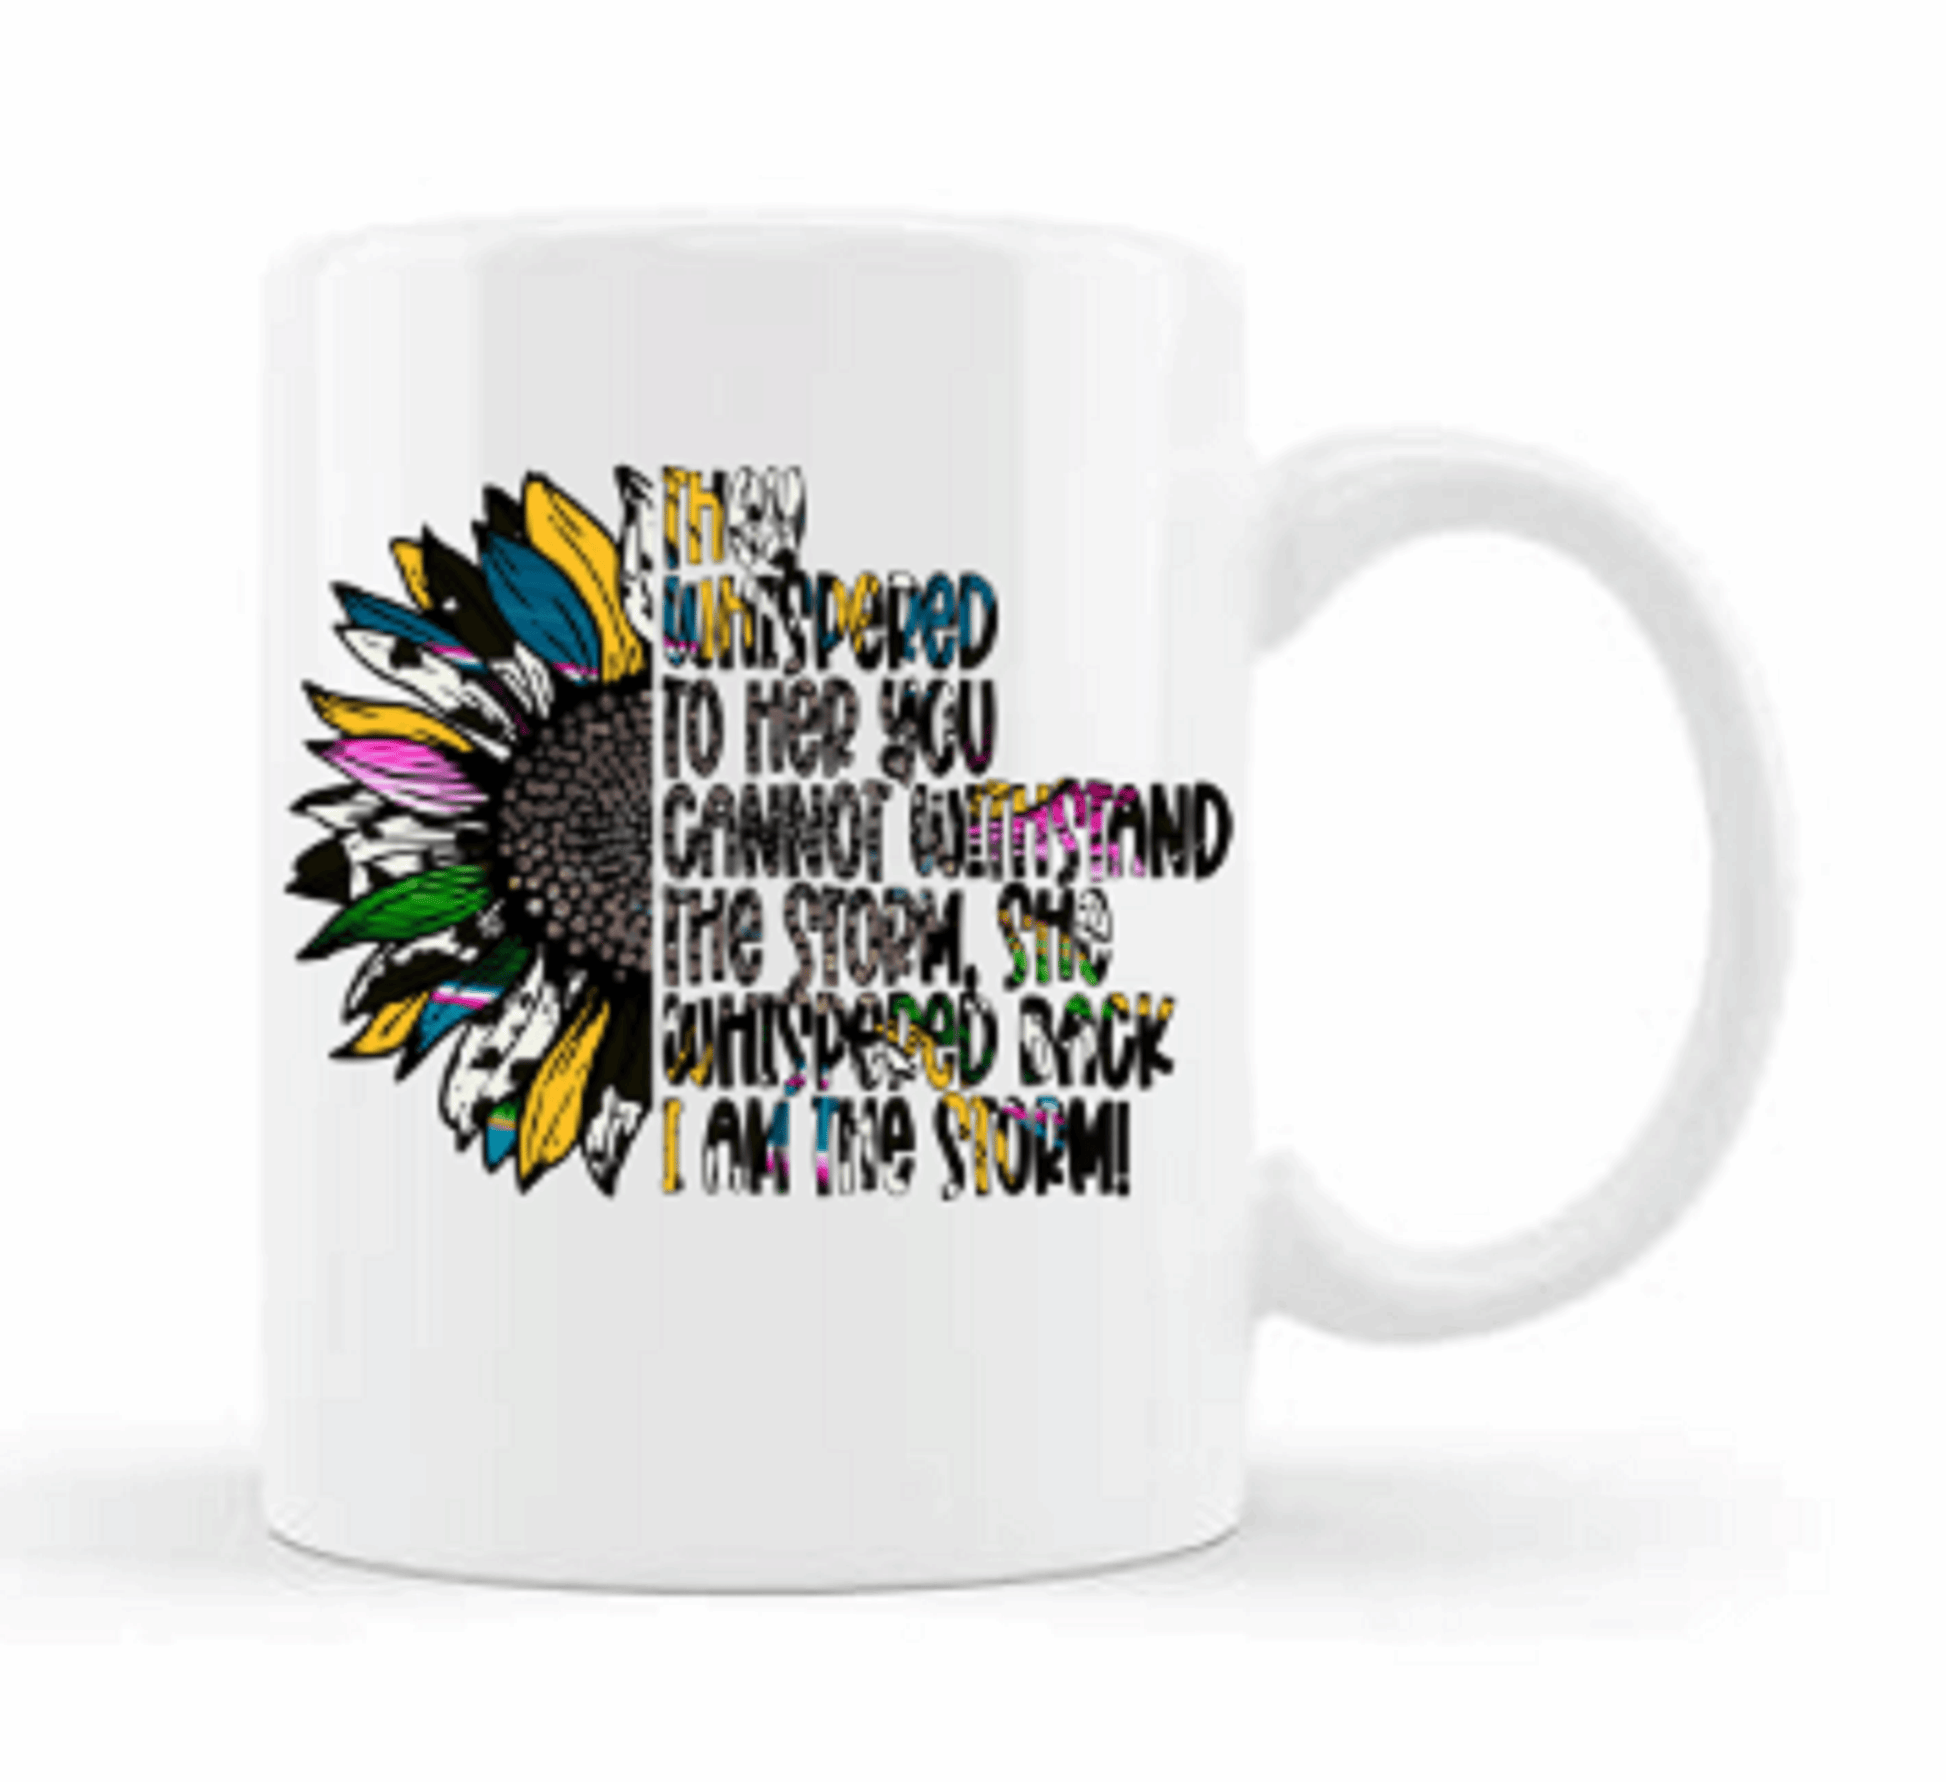  I Am The Storm Motivational Coffee Mug by Free Spirit Accessories sold by Free Spirit Accessories